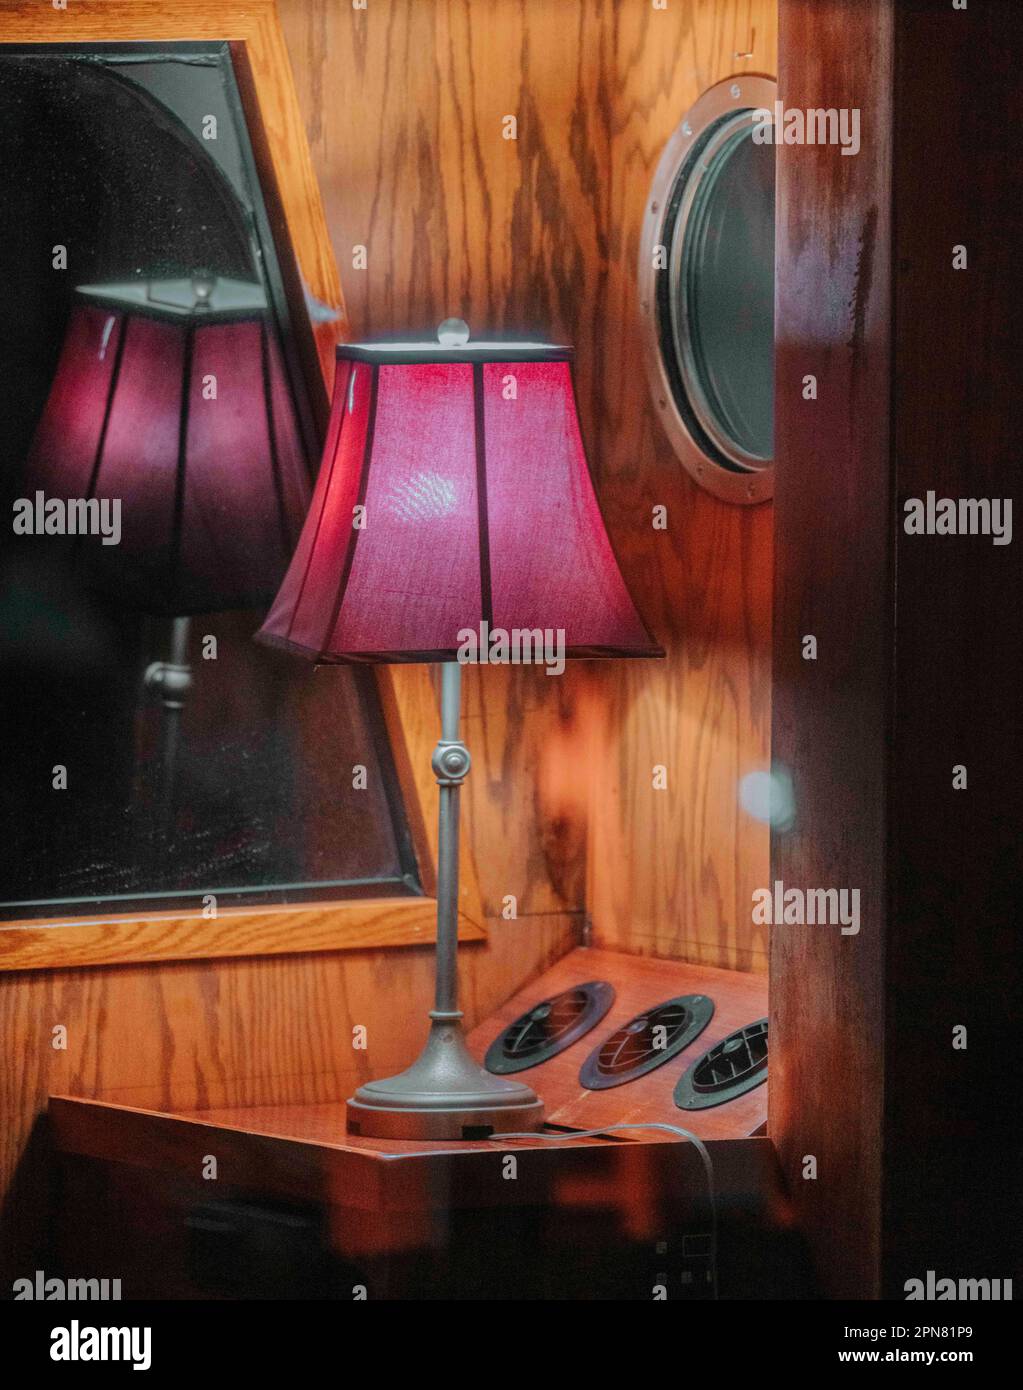 Eine rustikal aussehende Lampe mit freiliegender Lampe befindet sich auf einem Holztisch unter einem großen Spiegel Stockfoto